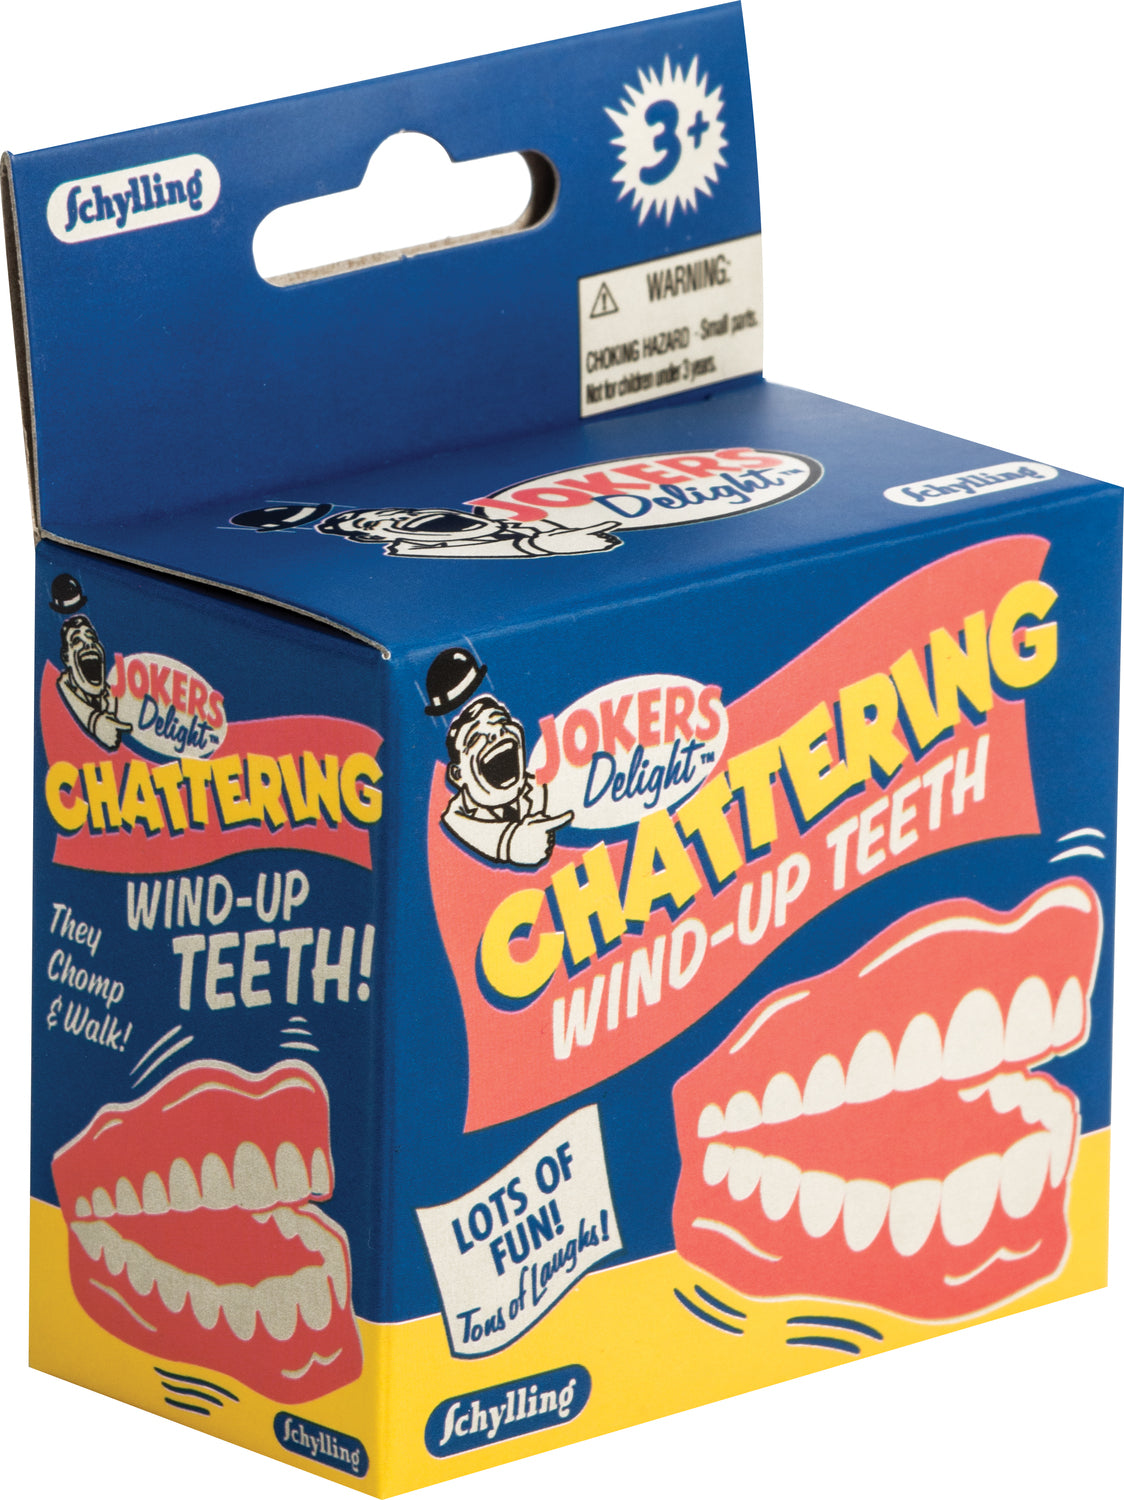 Chattering Teeth Windup